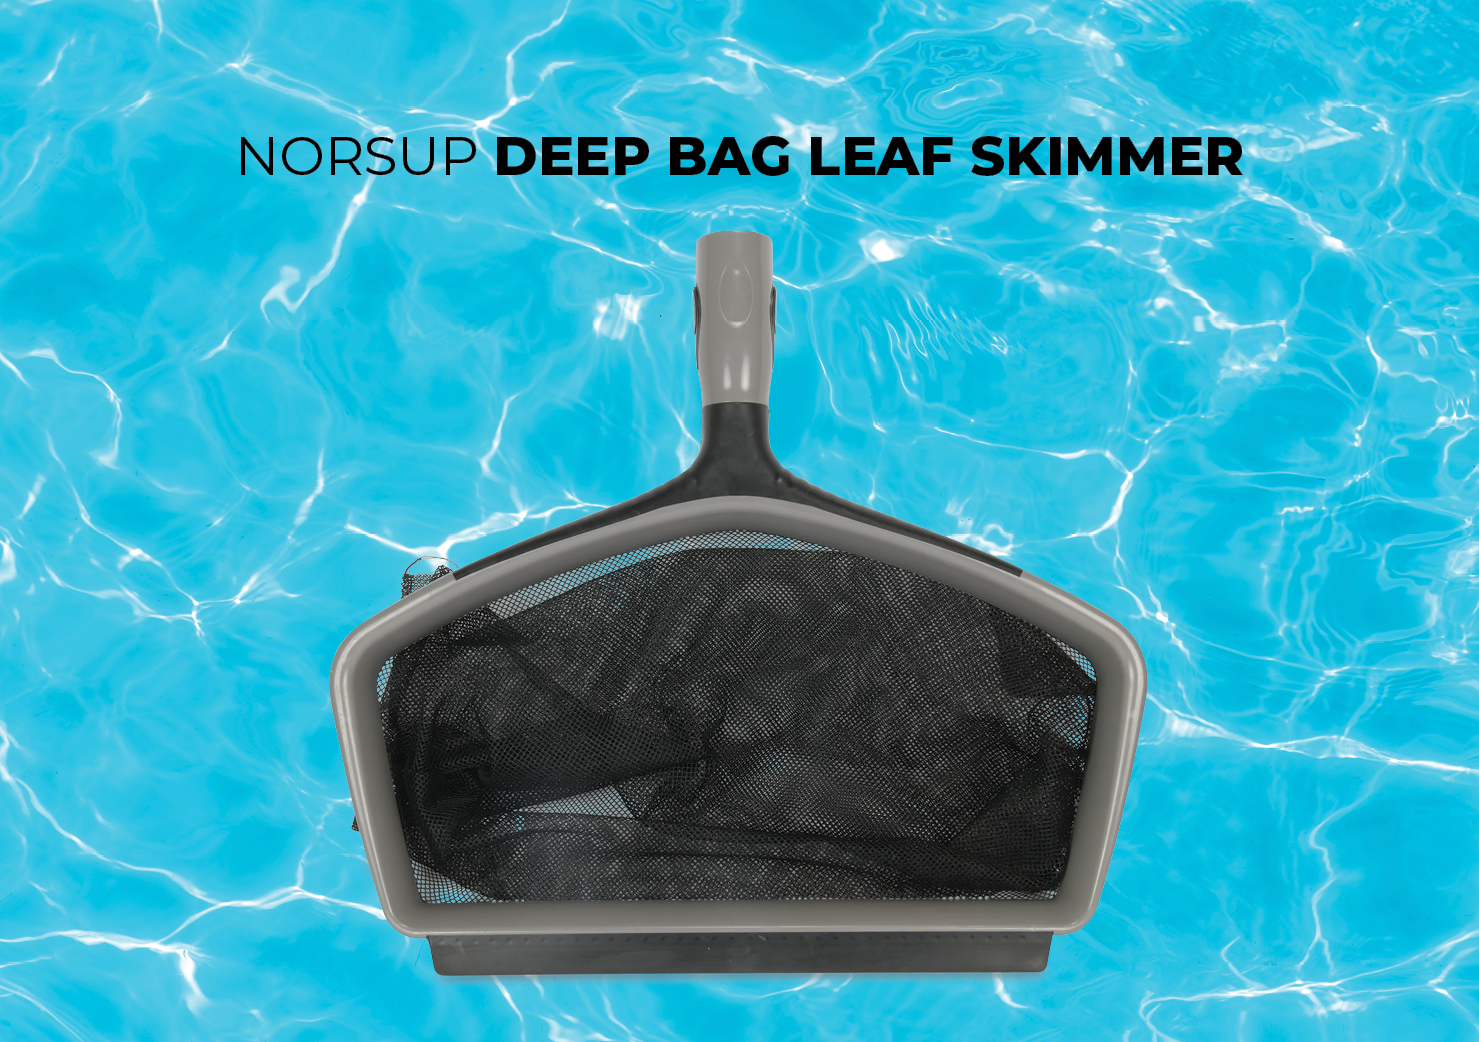 Norsup deep bag leaf skimmer